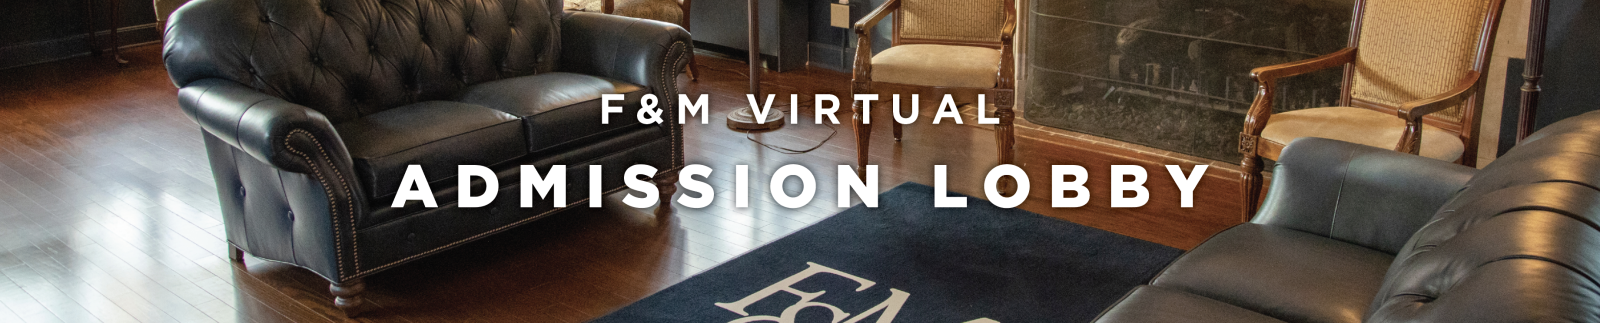 F&M Virtual Admission Lobby